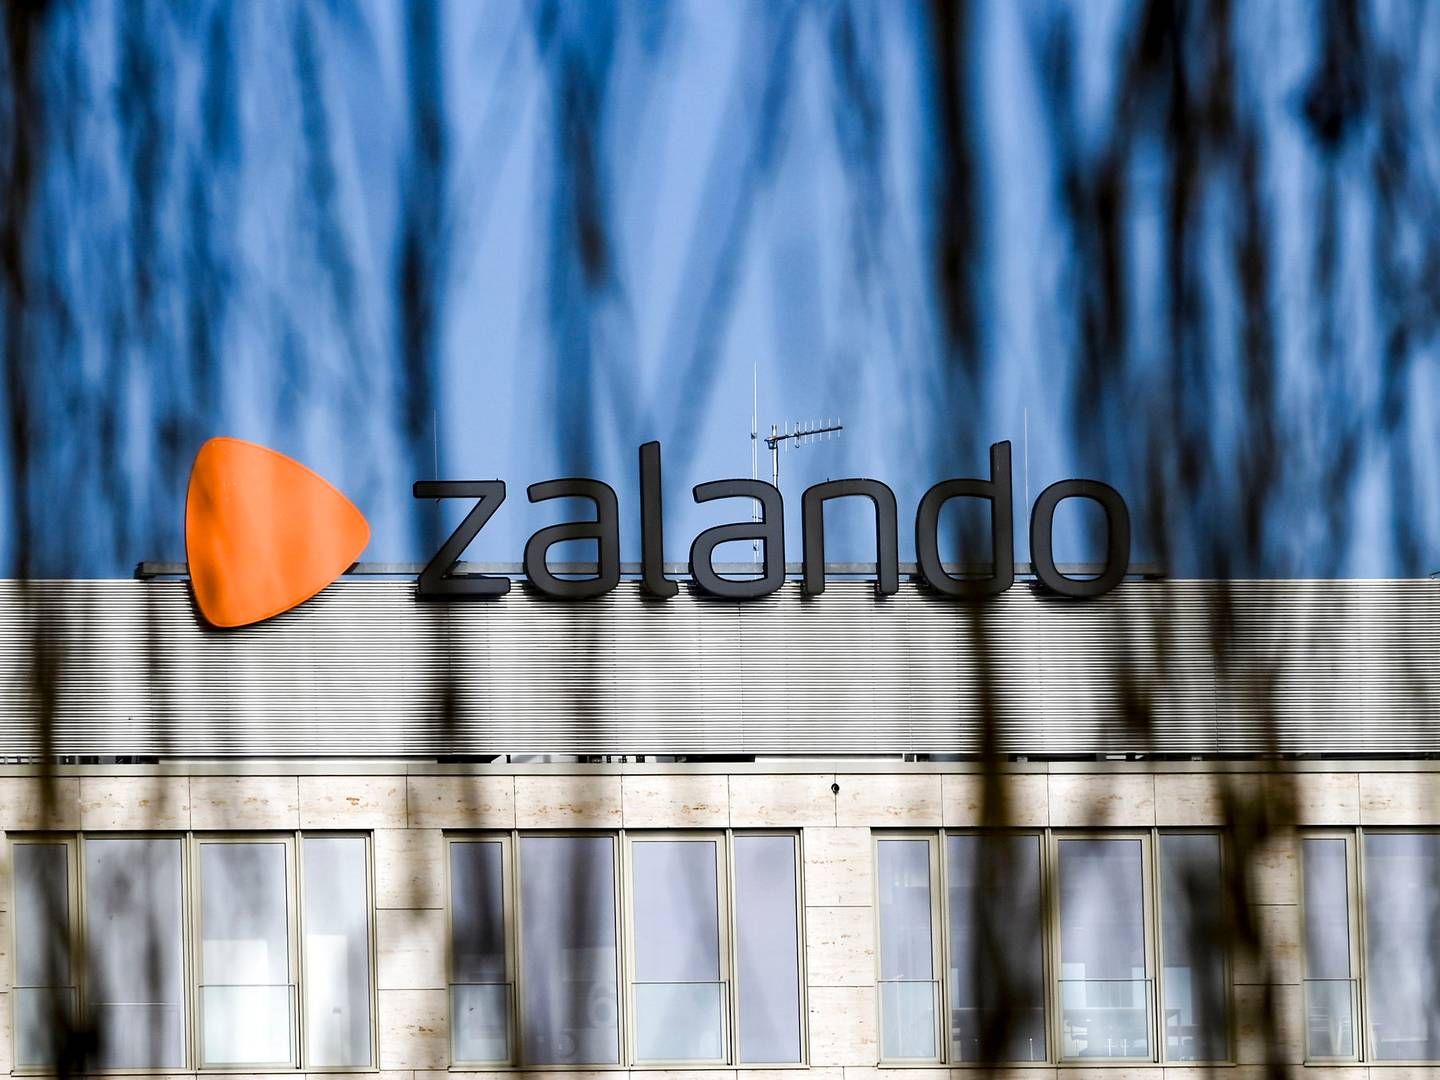 Zalandos chef for bæredygtighed er rykket til britiske Asos. | Foto: Jens Kalaene/ap/ritzau Scanpix